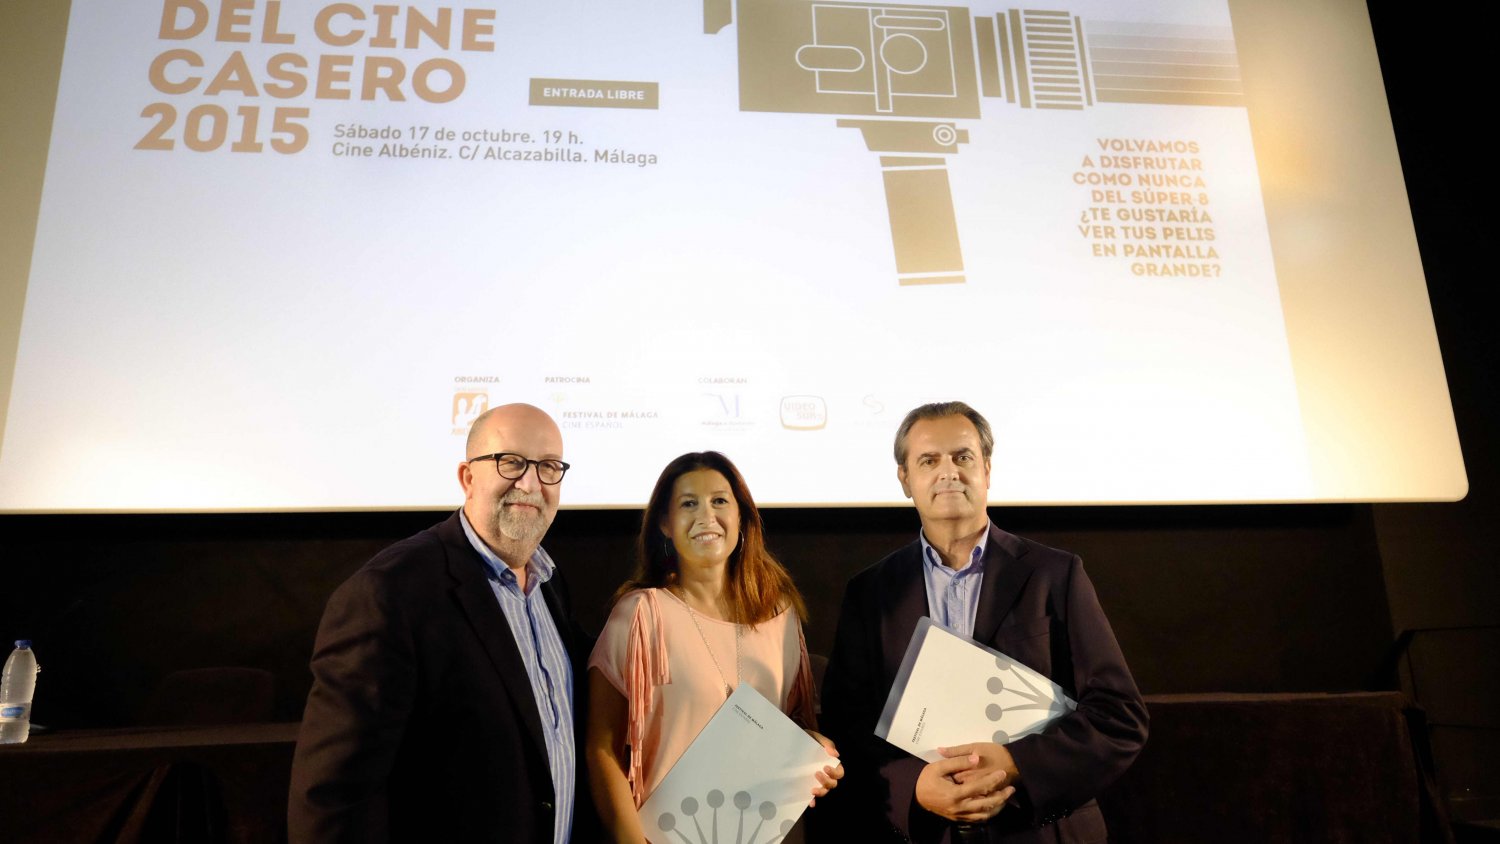 El Cine Albéniz se suma al Día Internacional del Cine Casero